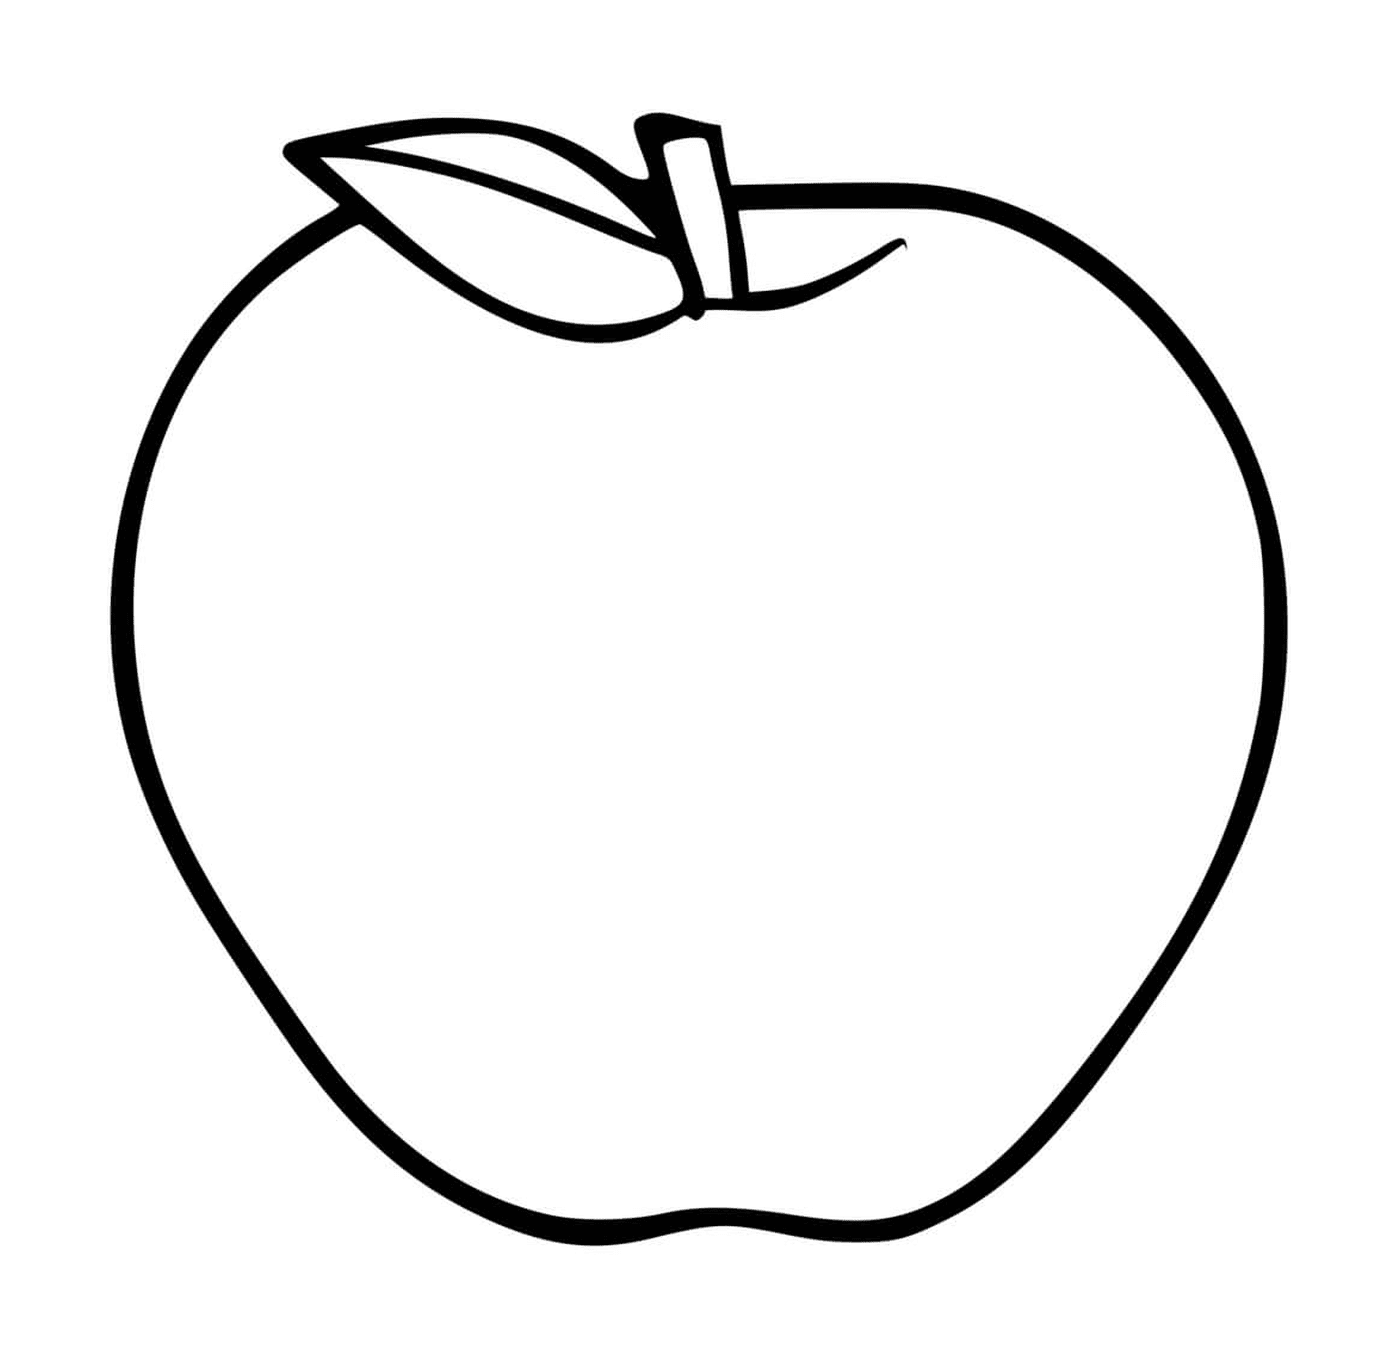  Яблоко, произведенное яблочной елкой 